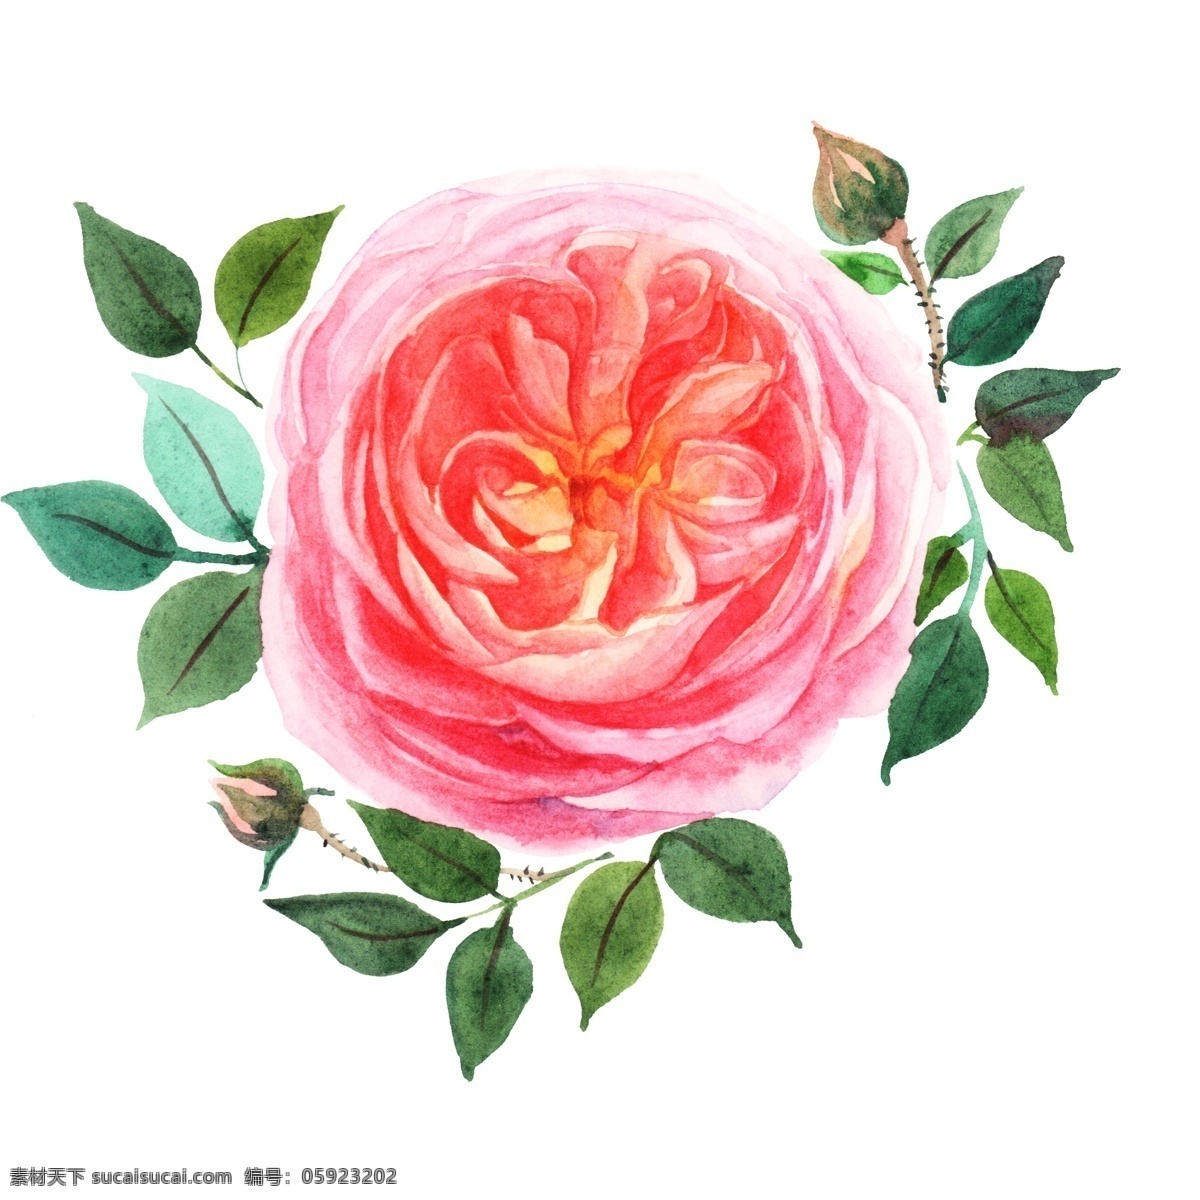 粉色 水彩 花卉 插画 手绘鲜花插画 美丽的鲜花 漂亮的鲜花 创意鲜花插画 妖艳的花朵 鲜花